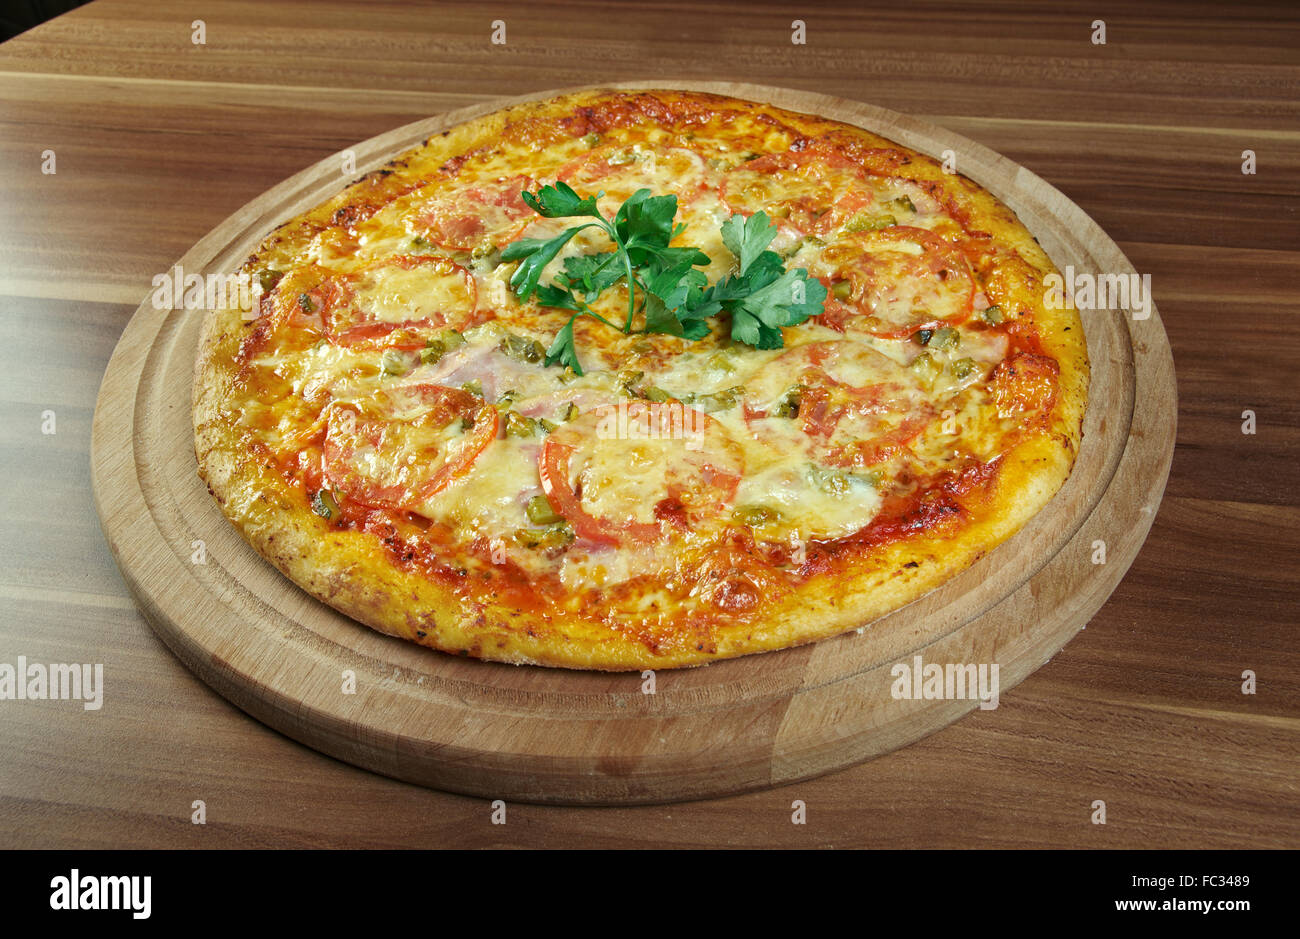 Pizza aglio, olio e pomodoro Stock Photo